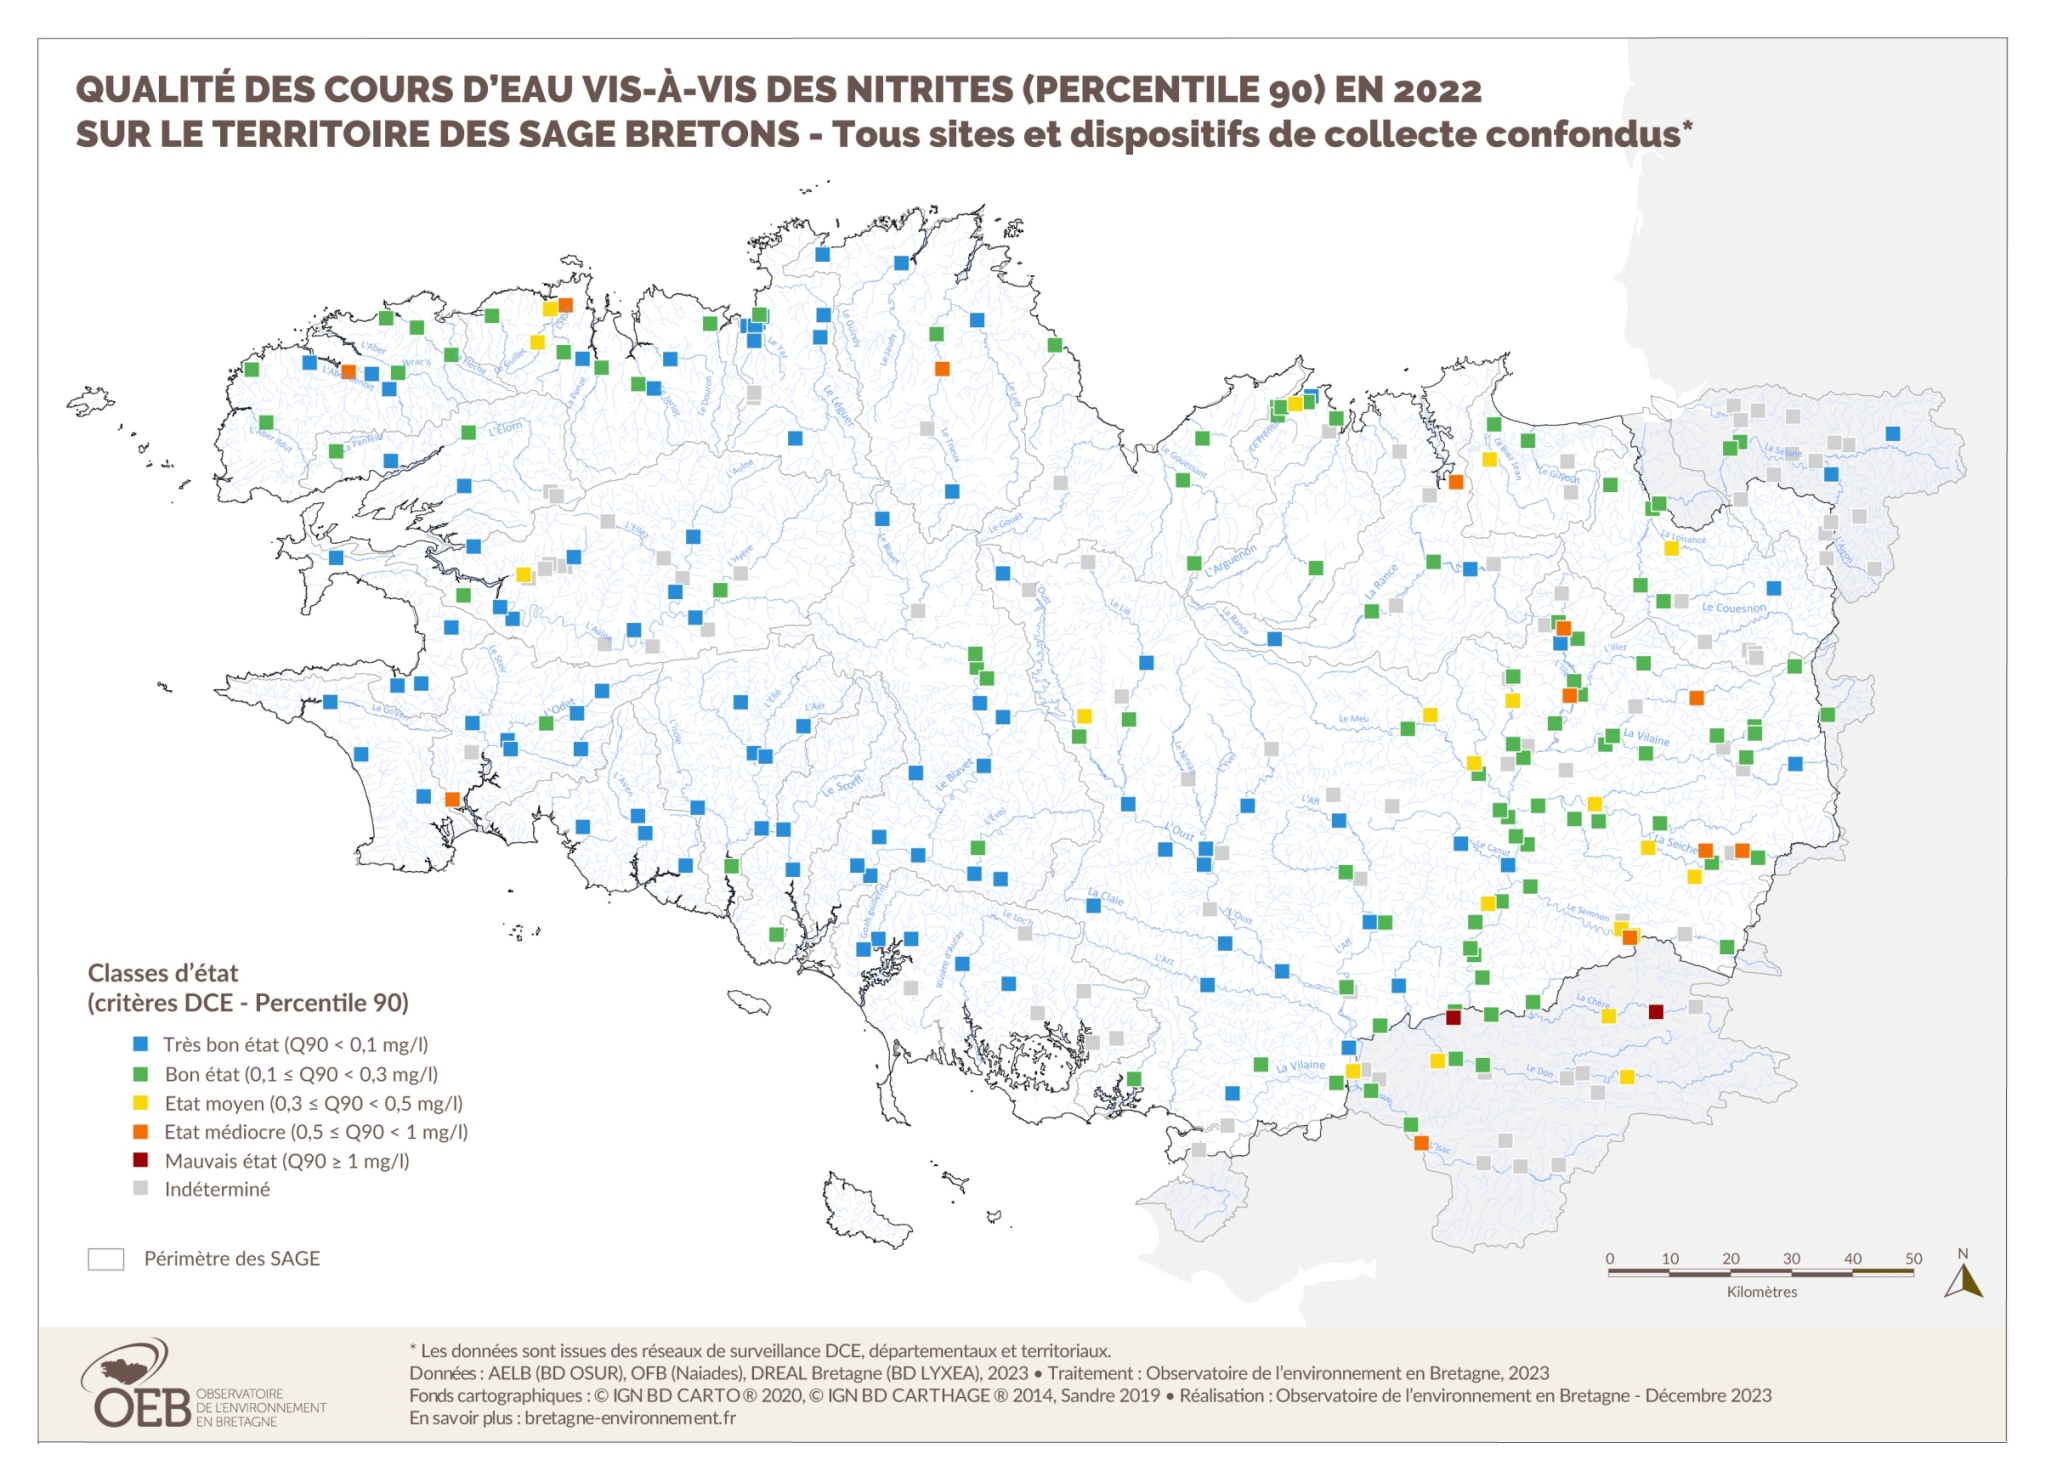 Qualité des cours d'eau bretons vis-à-vis des nitrites (Q90) en 2015